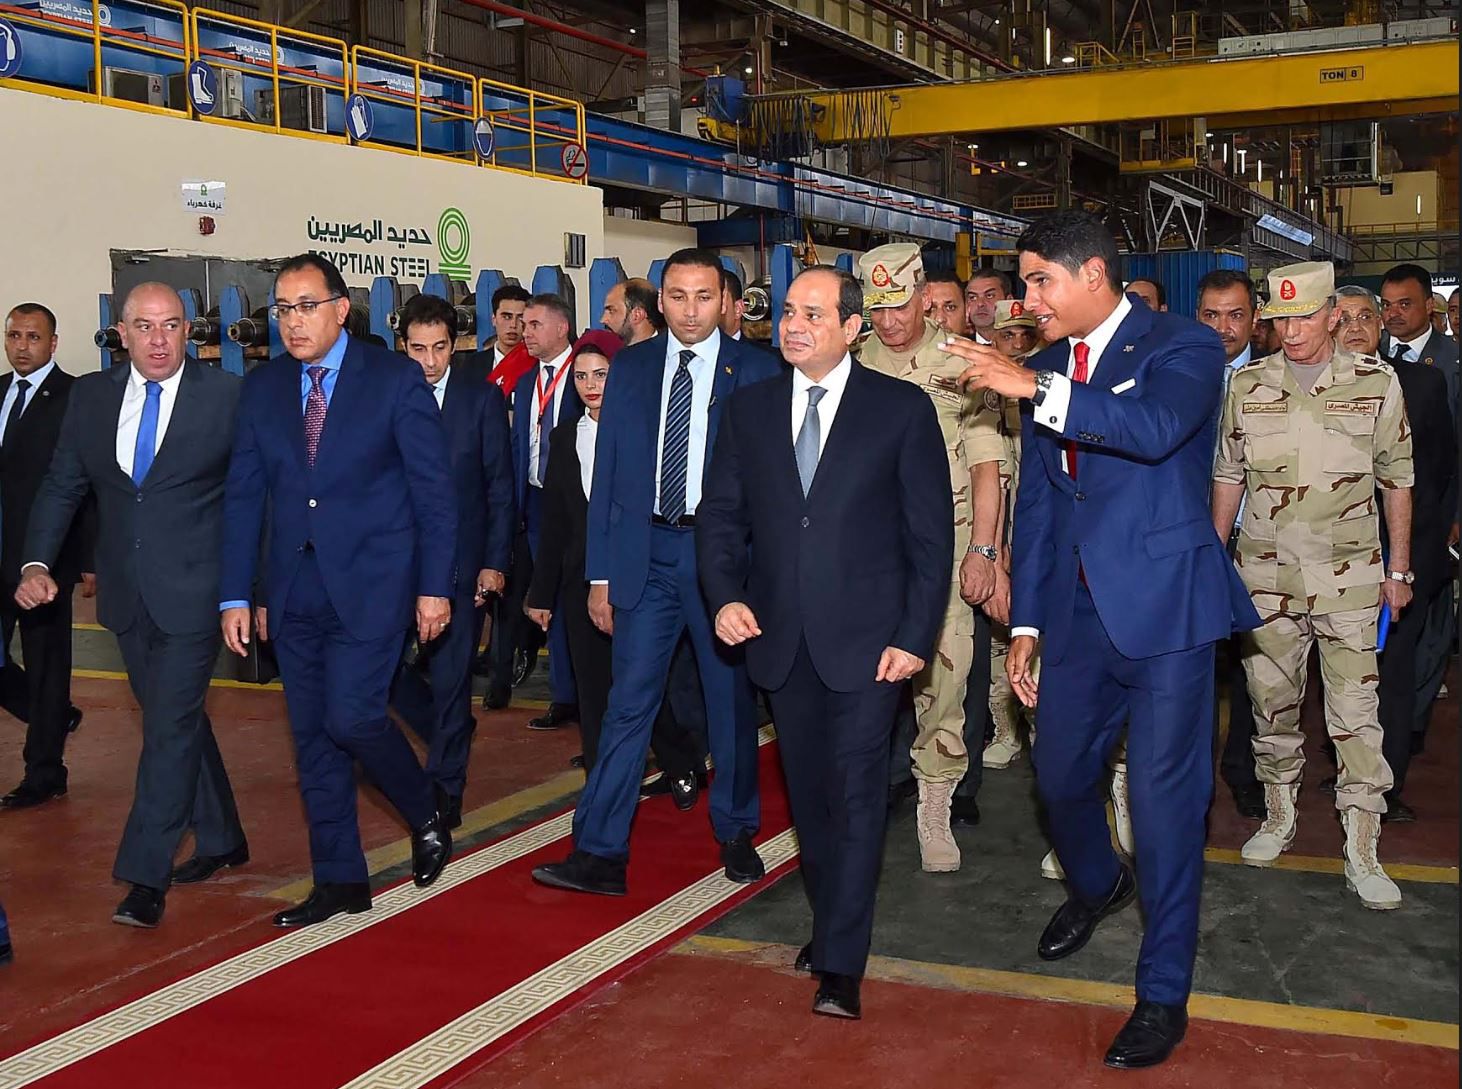 الرئيس السيسي يزور أحمد أبو هشيمة في مصانع الحديد وهذا هو شغل أبو هشيمة وليس سبونسر حفلة